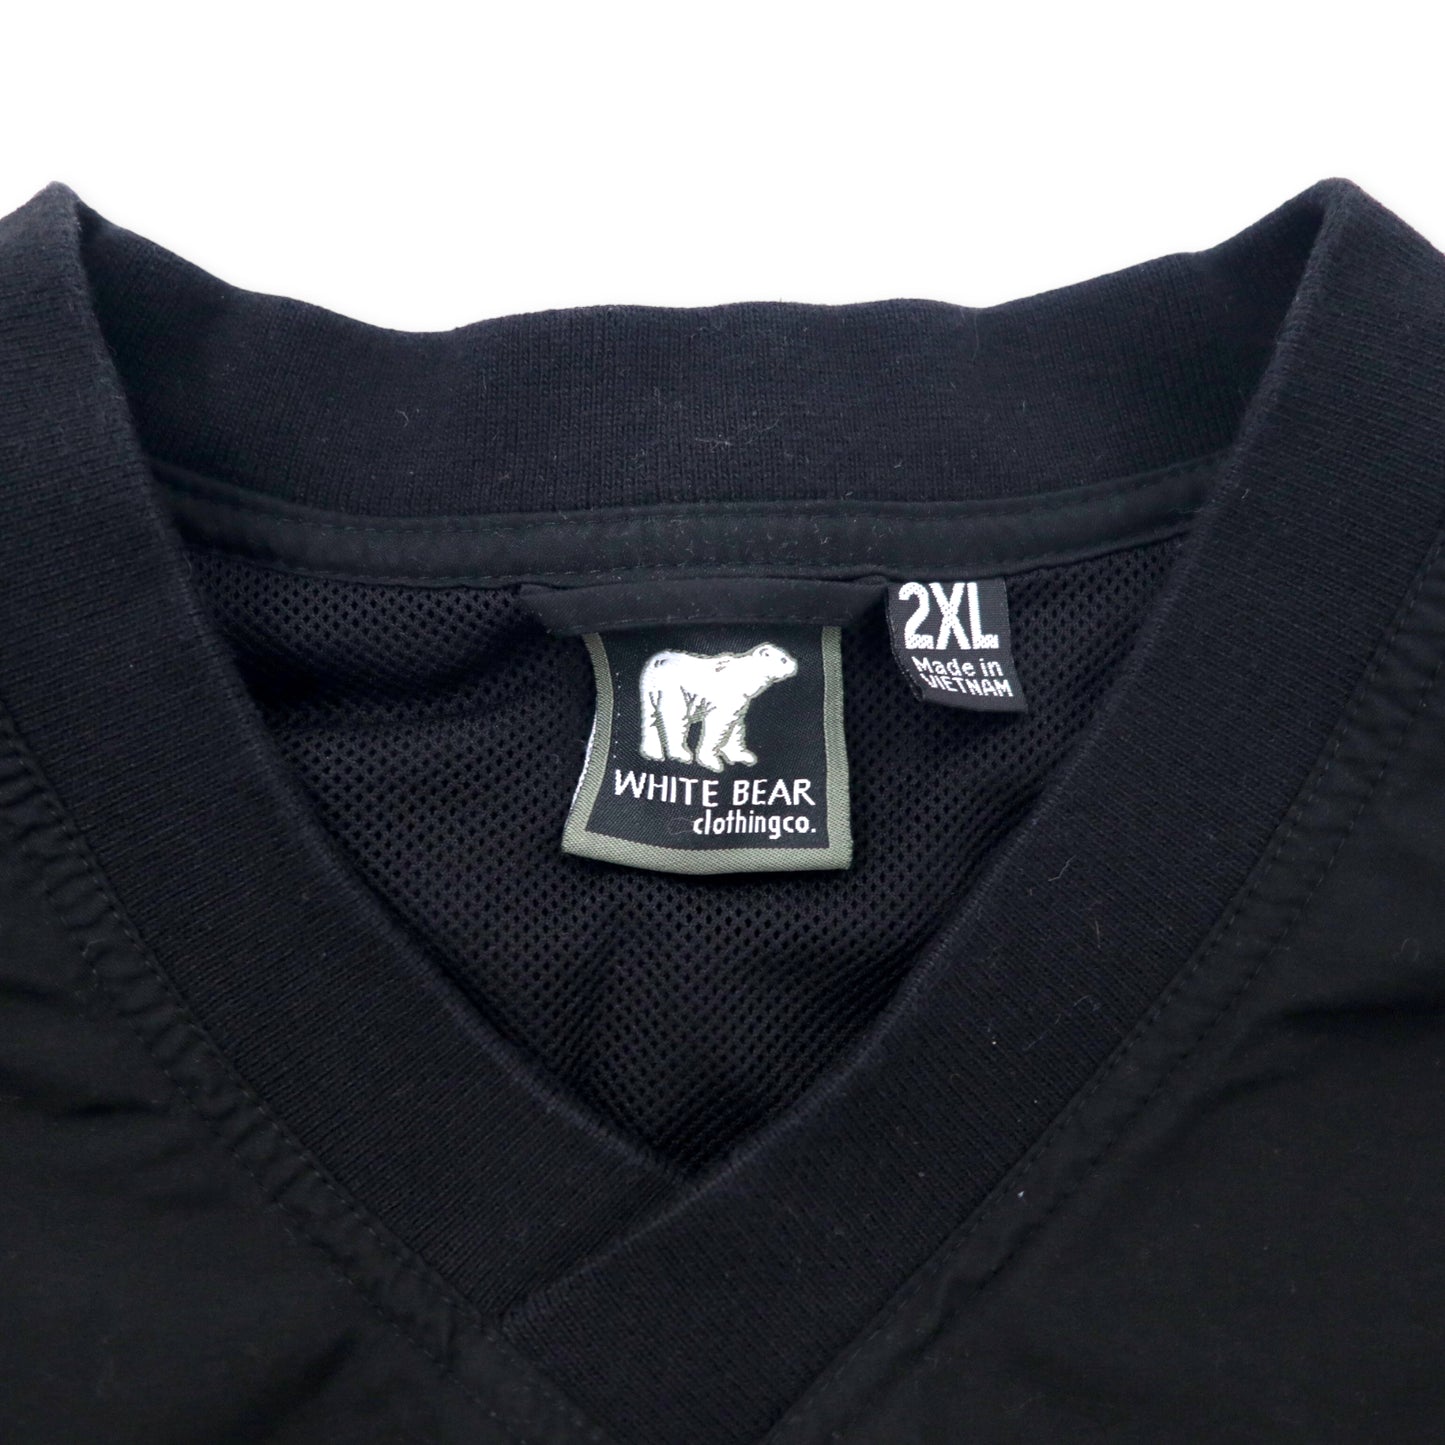 WHITE BEAR clothing co. ピステ プルオーバー ナイロンジャケット 2XL ブラック ポリエステル メッシュライナー US企業 POET 刺繍 ビッグサイズ